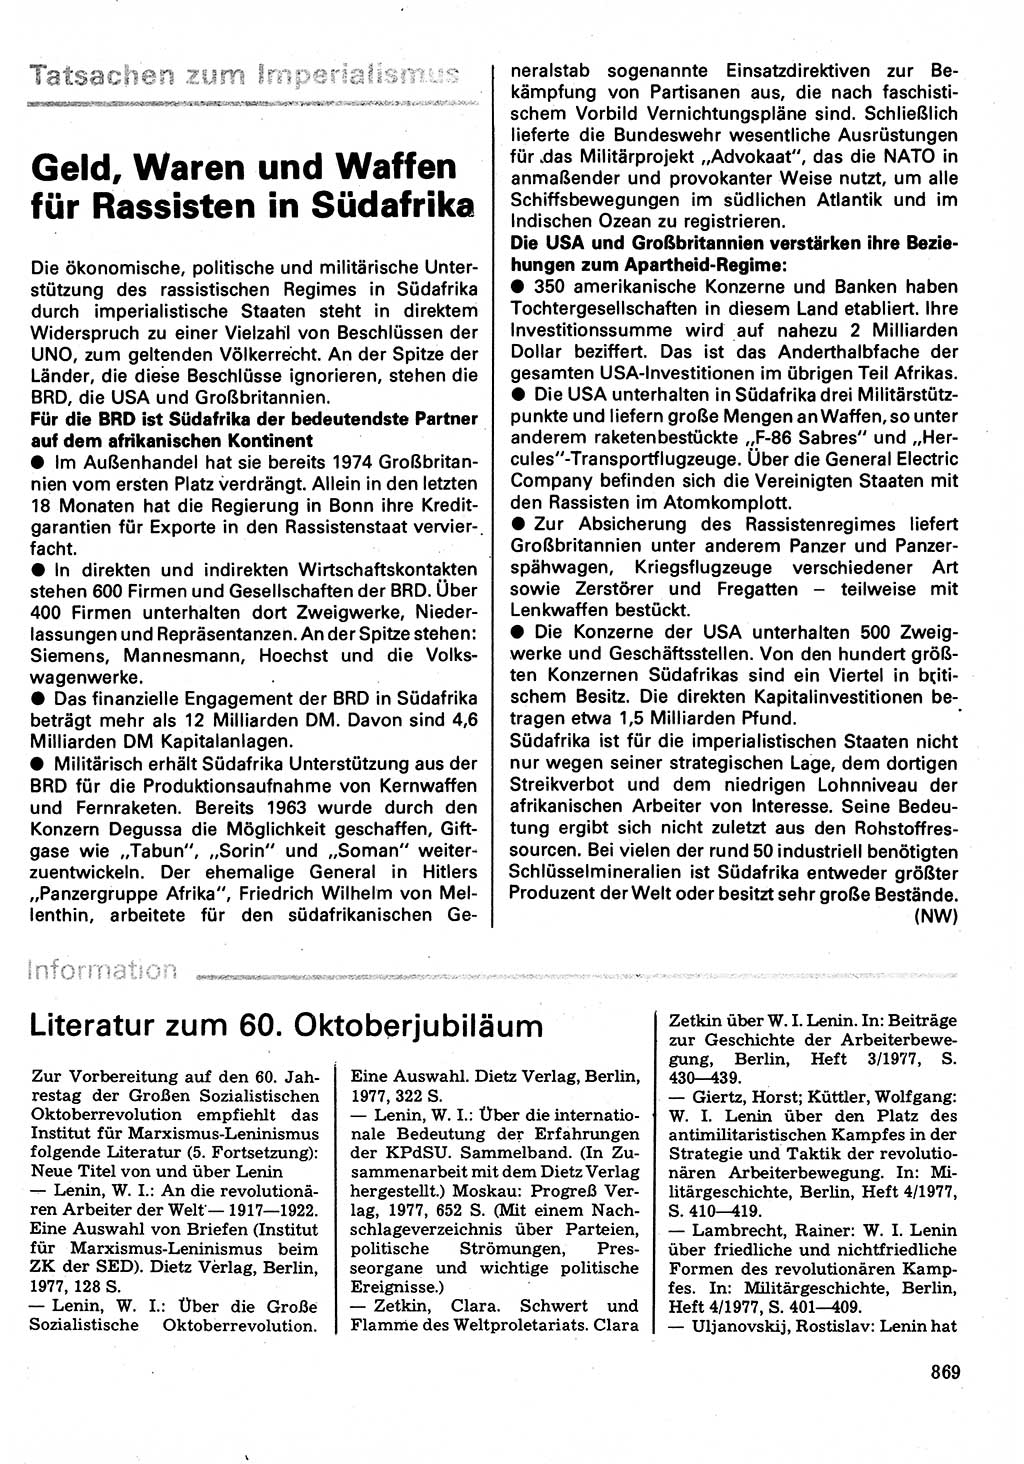 Neuer Weg (NW), Organ des Zentralkomitees (ZK) der SED (Sozialistische Einheitspartei Deutschlands) für Fragen des Parteilebens, 32. Jahrgang [Deutsche Demokratische Republik (DDR)] 1977, Seite 869 (NW ZK SED DDR 1977, S. 869)